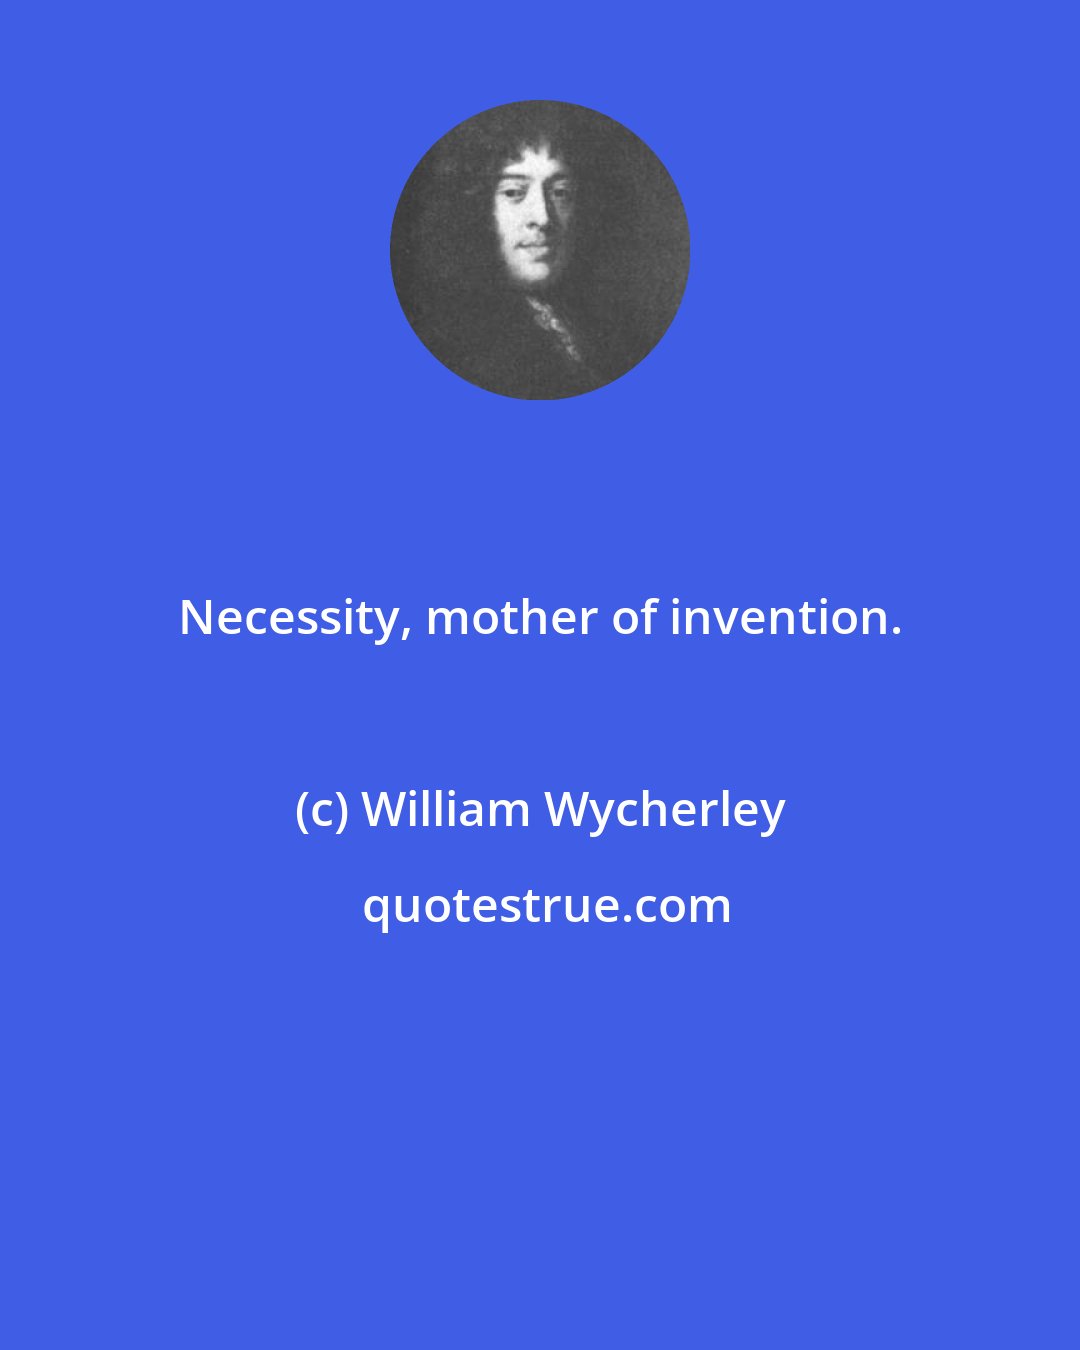 William Wycherley: Necessity, mother of invention.